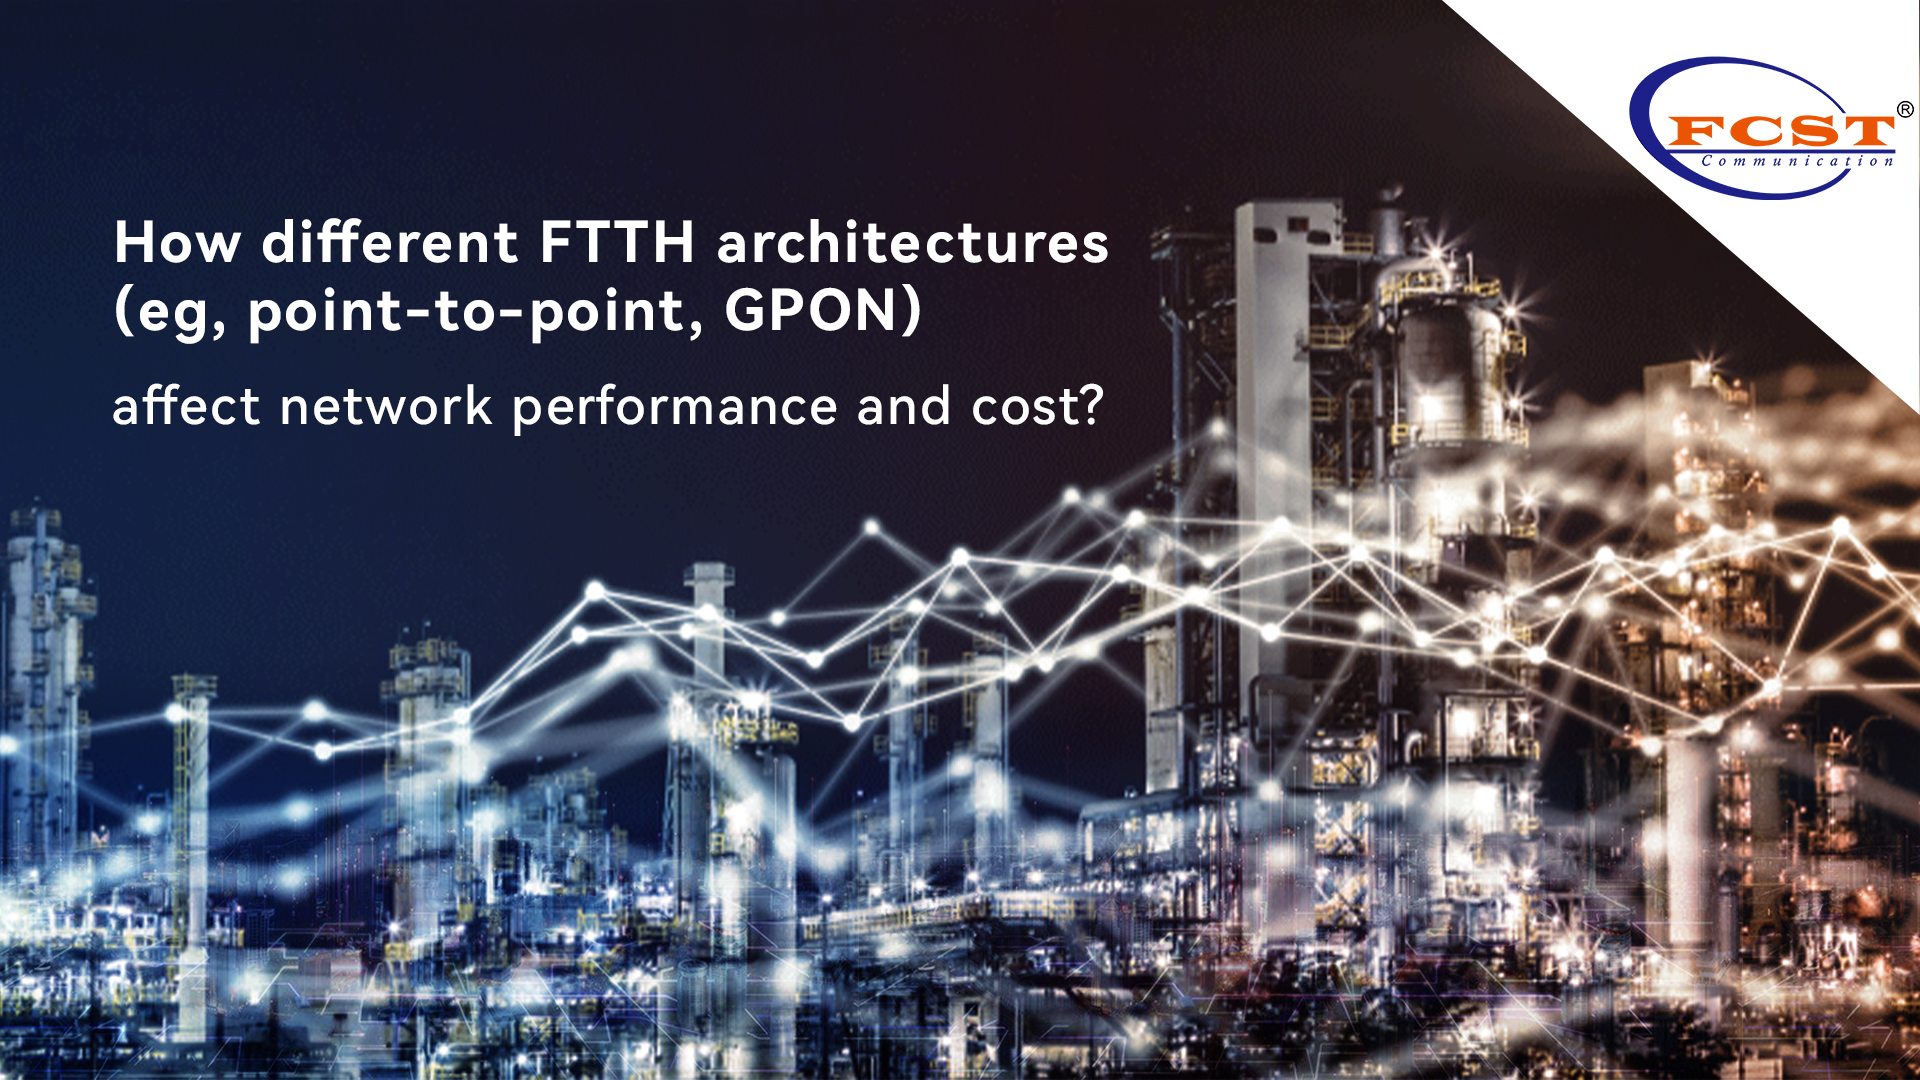 Comment différentes architectures FTTH (par exemple, point à point, GPON) affectent-elles les performances et les coûts du réseau?